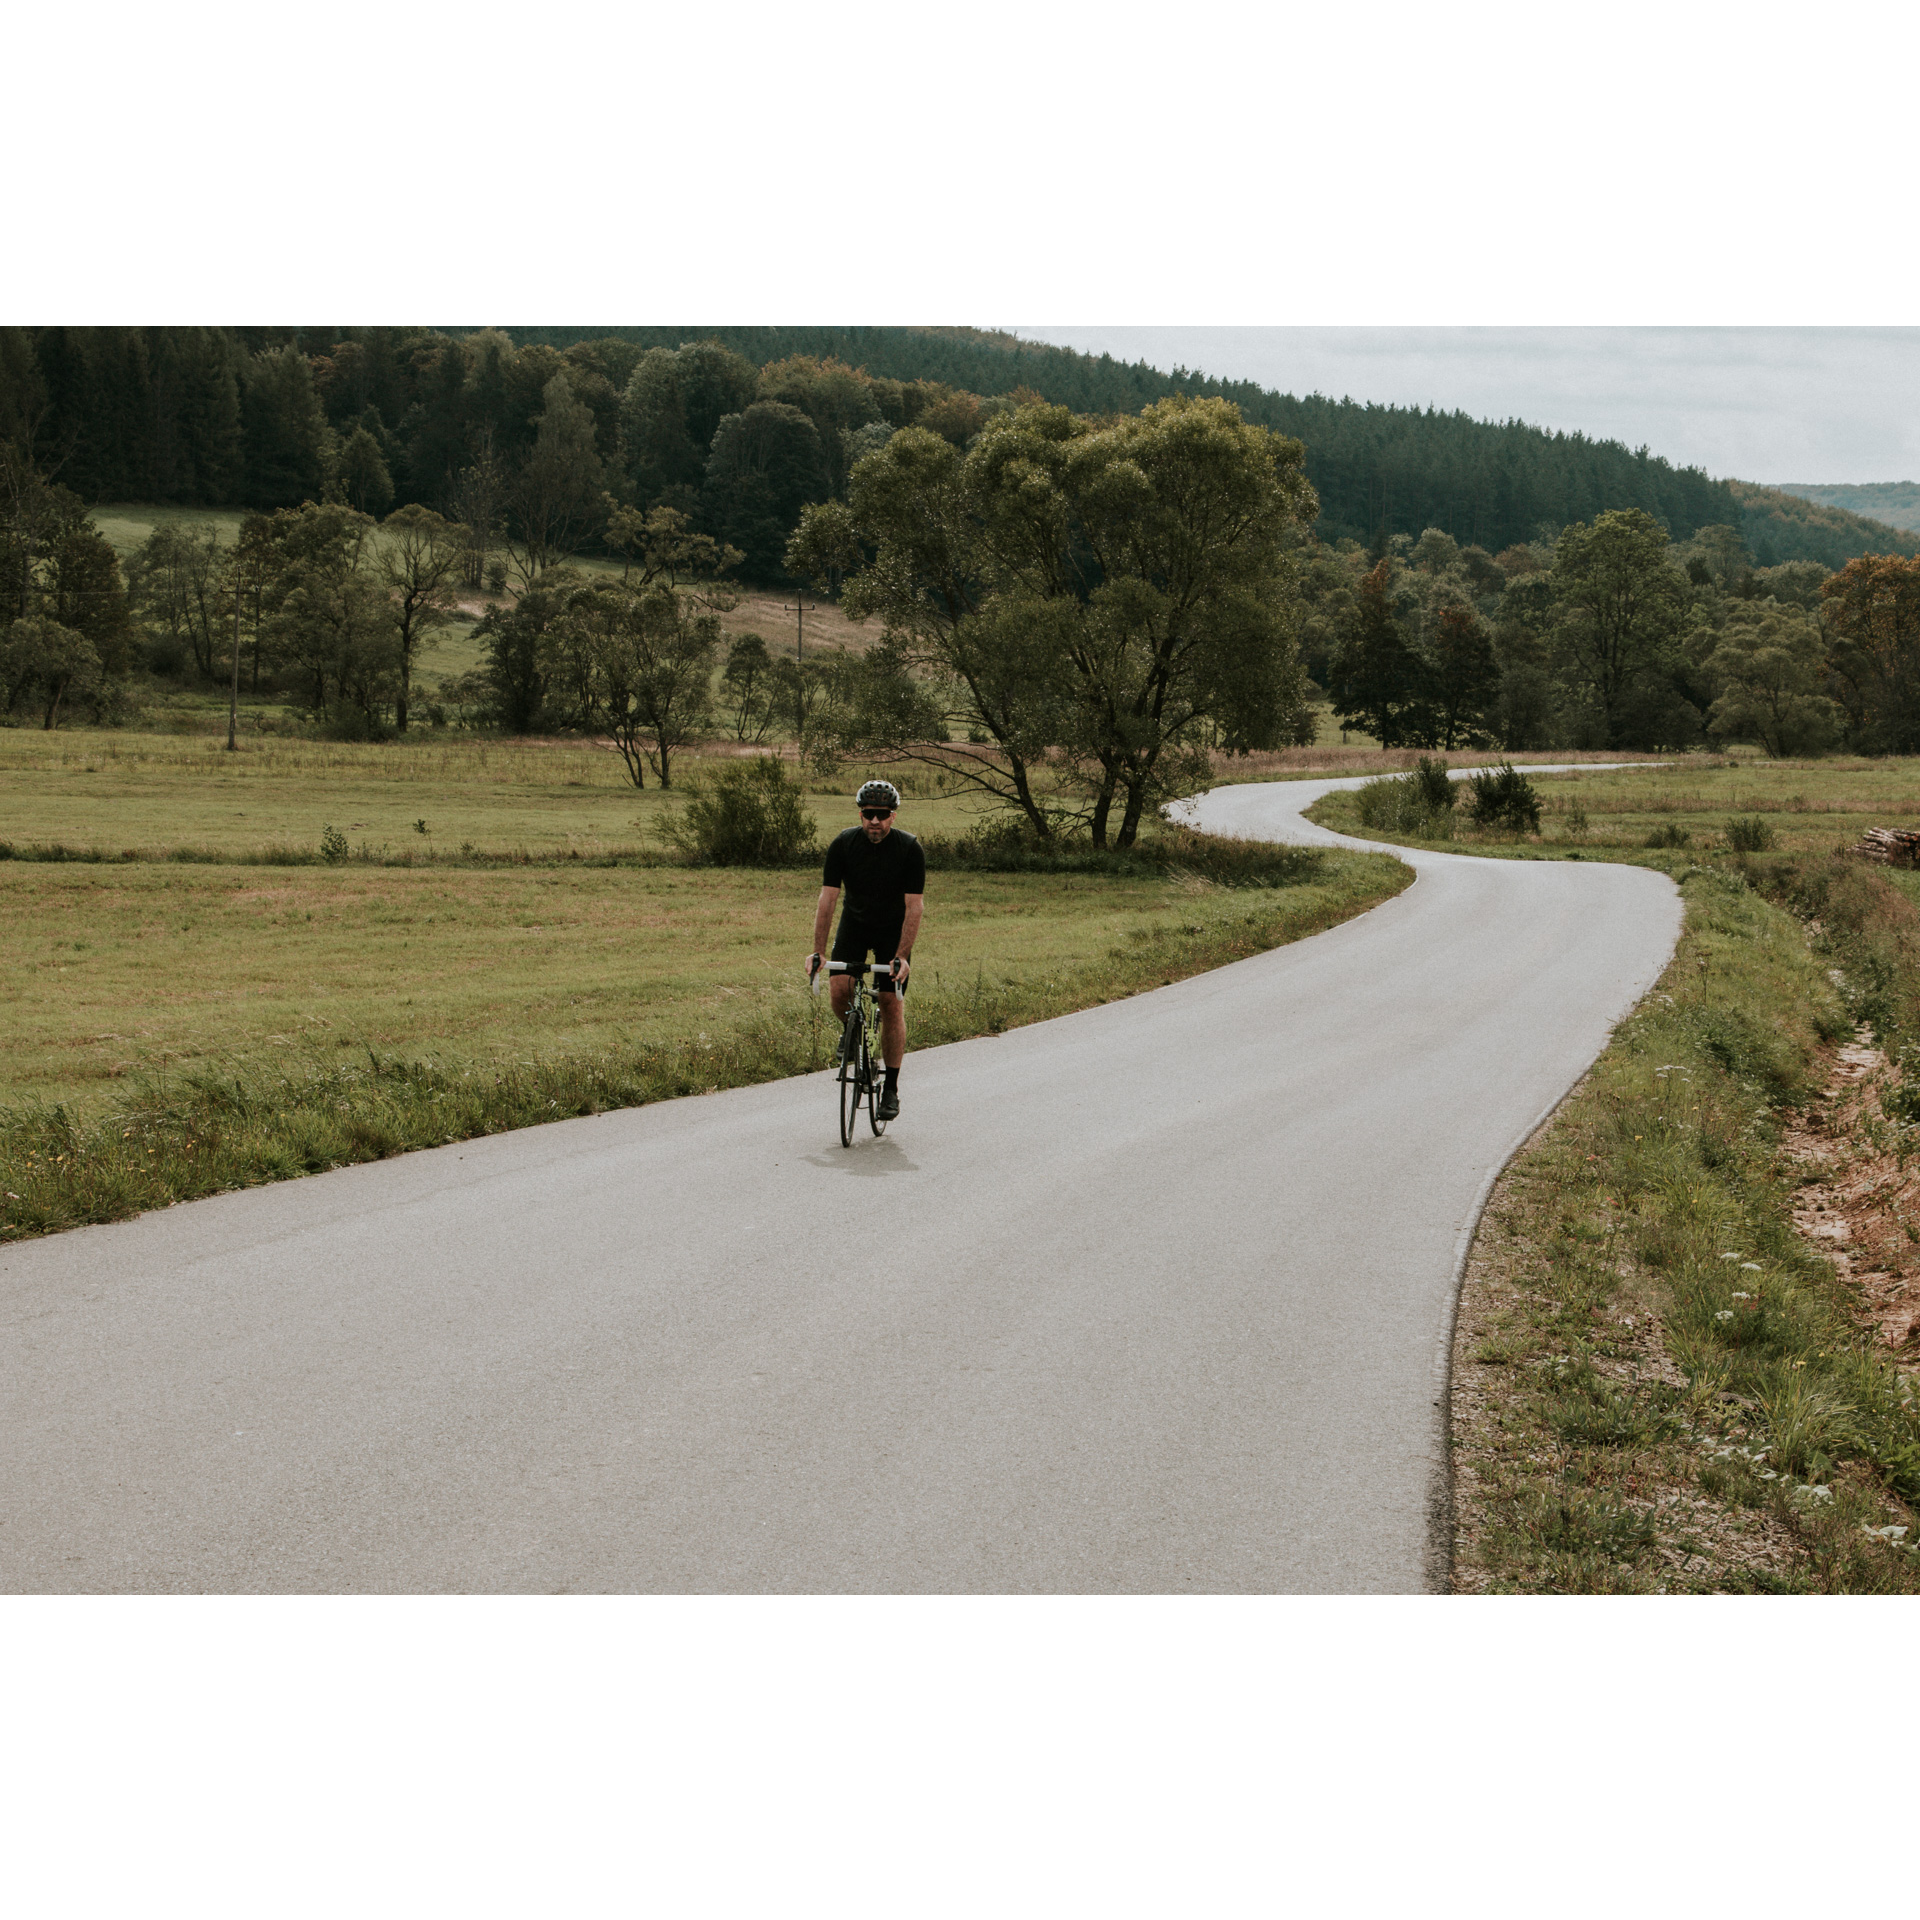 Kolarz w czarnym stroju i kasku jadący na rowerze asfaltową krętą drogą wśród zielonych łąk, drzew i wzgórz